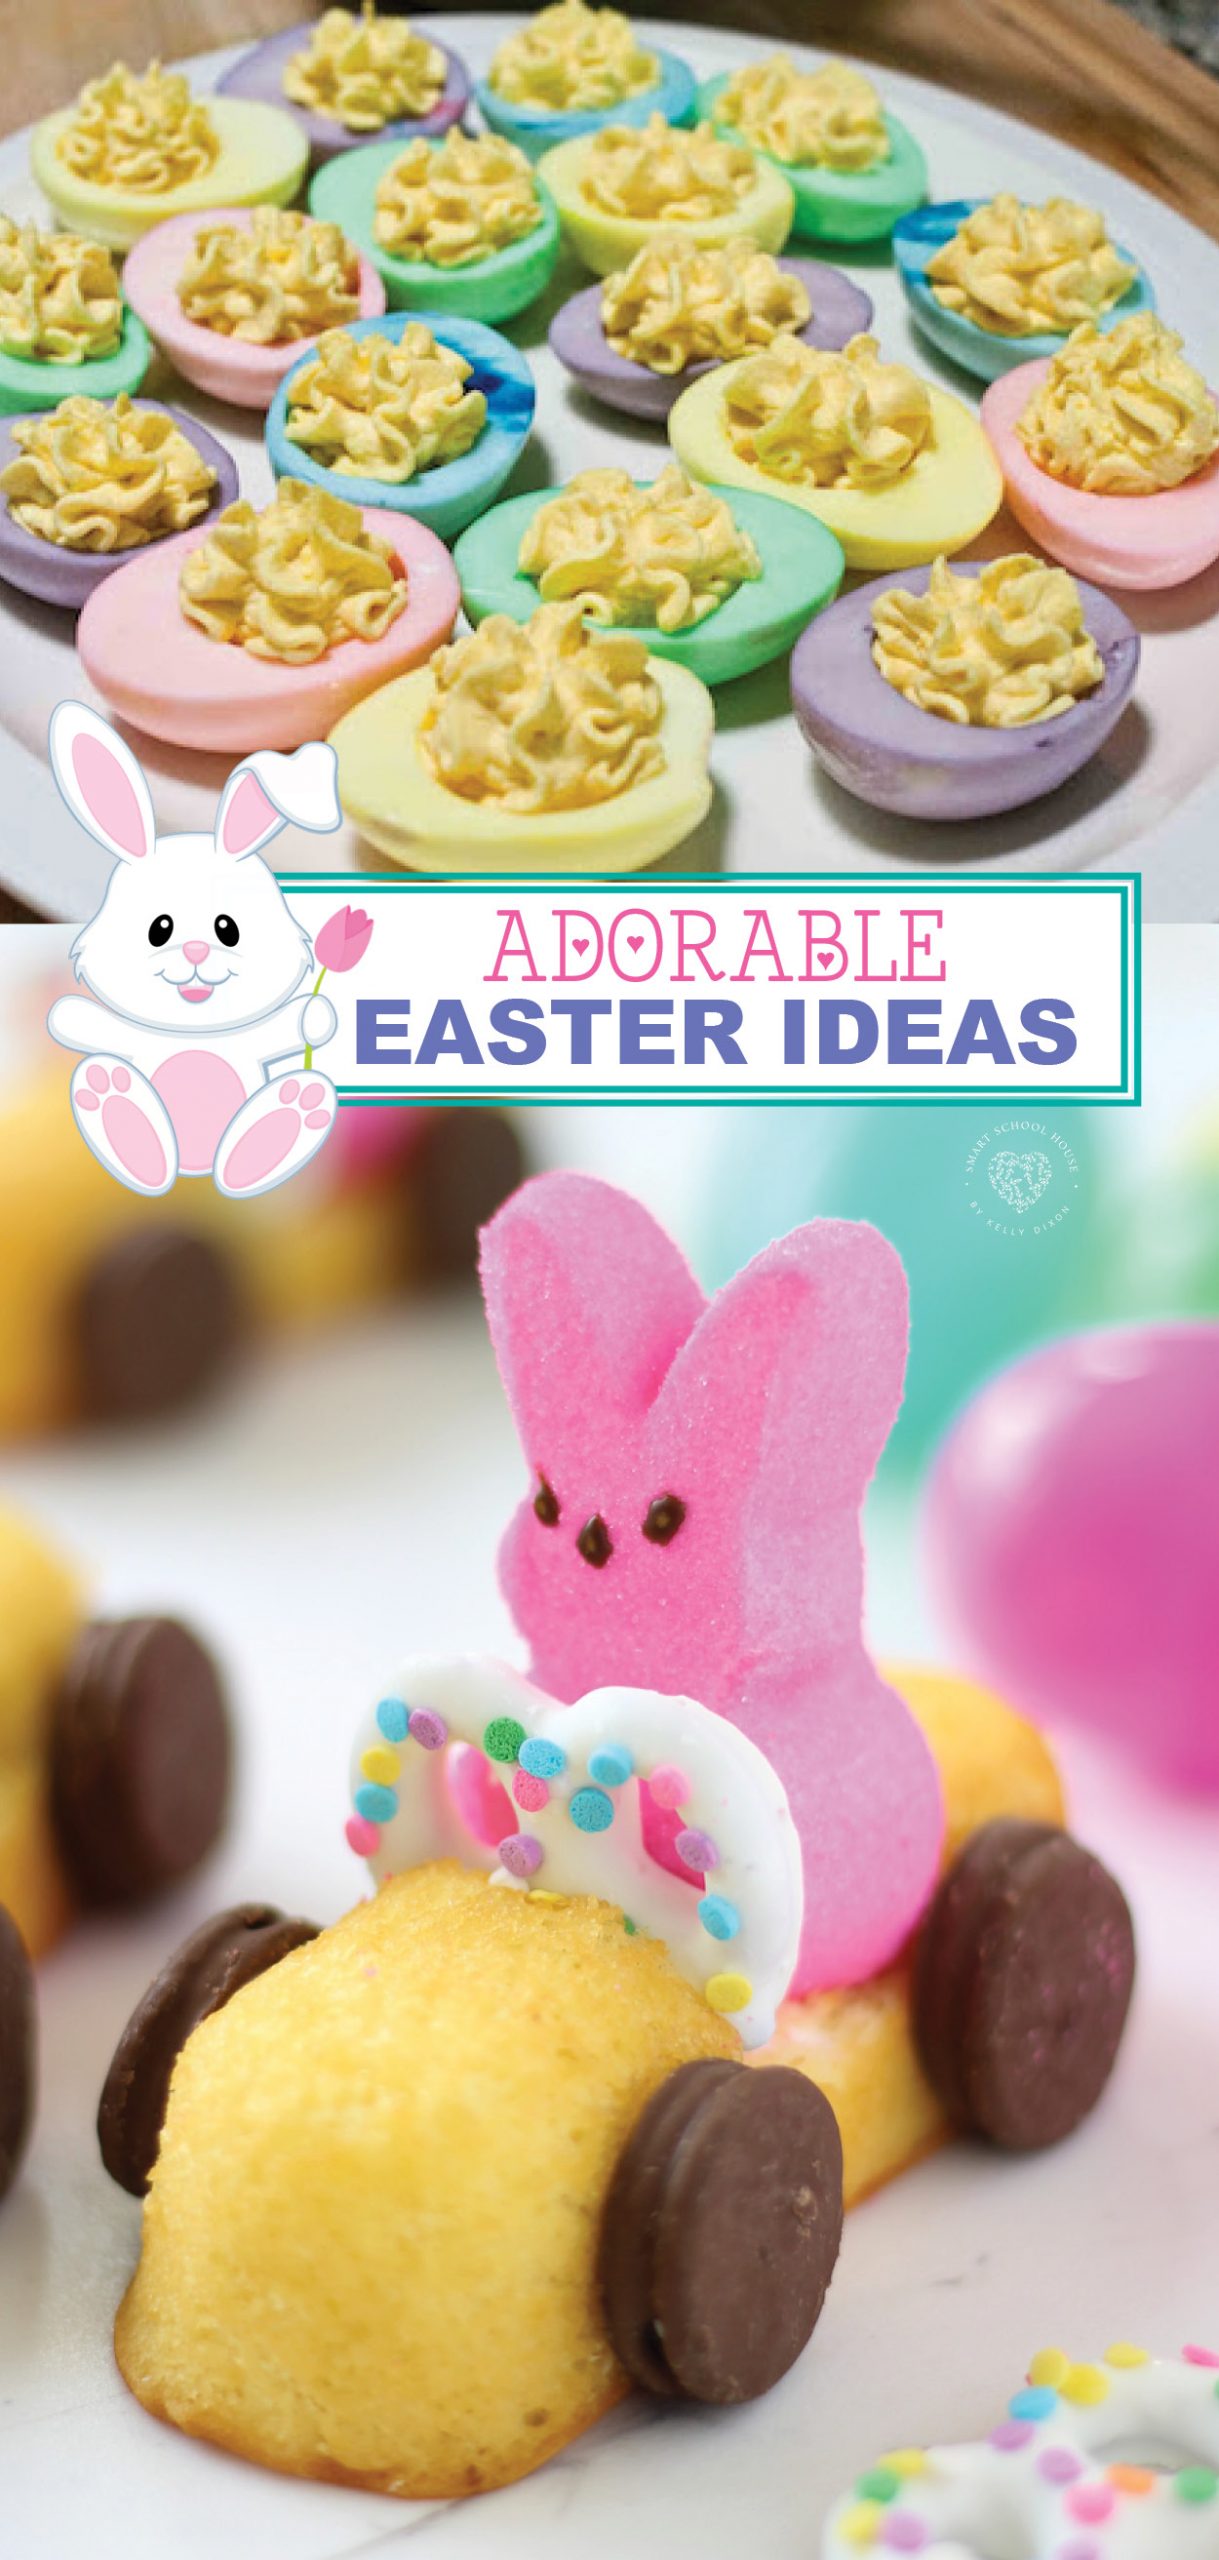 Adorable DIY Easter ideas